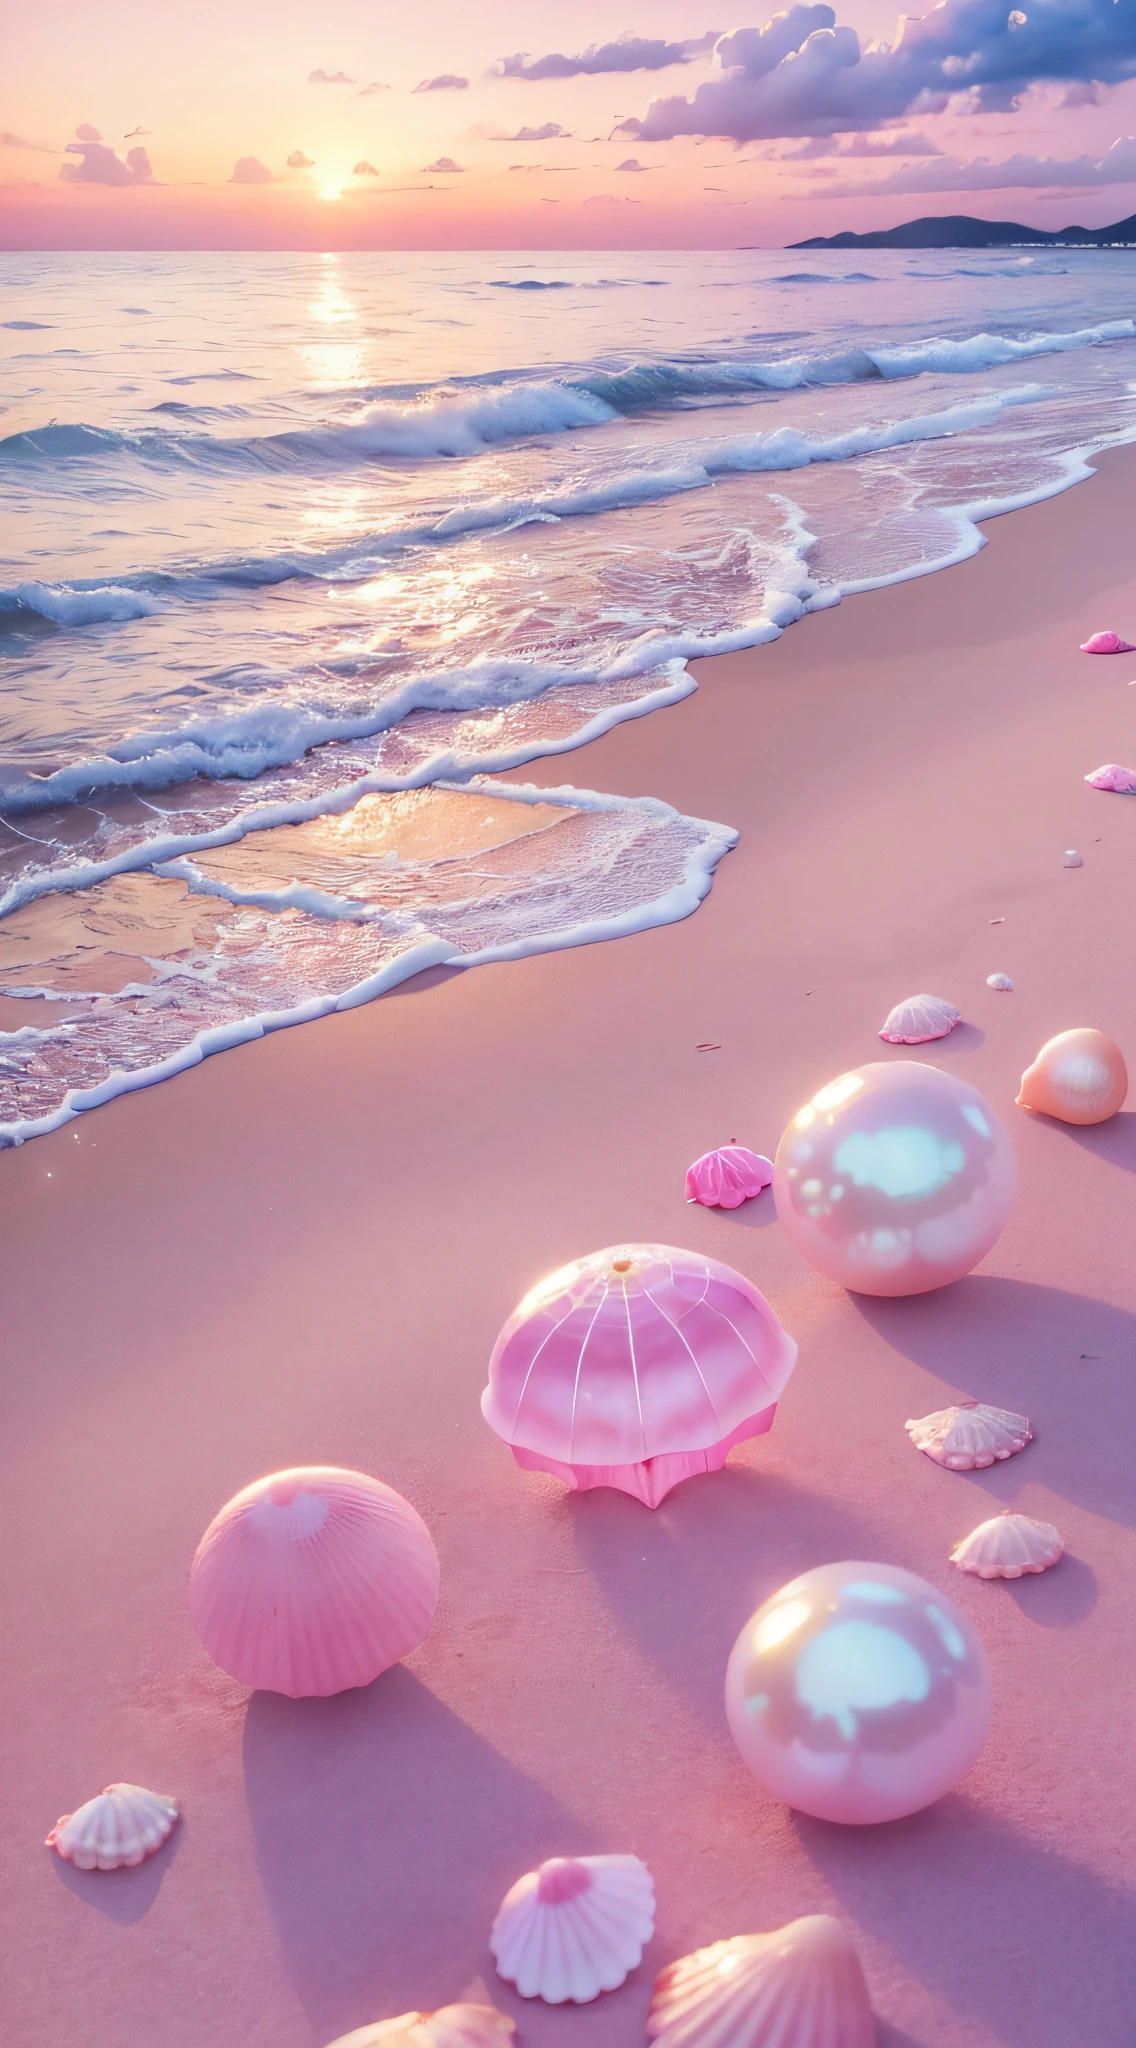 (8K, RAW-Foto, beste Qualität, Tischplatte: 1.2), (Realistisch, Realistisch: 1.37) There are pink Muscheln on the beach, Es gibt Gewässer, perlglanz, Perlen and Muscheln, Sanftes Verschütten, Perlen, Rosa Quallen gibt es überall, Weiches 3D-Rendering, ätherische Blasen, blase landschaft, Elay-Shader, pastel pink, rosa Reflexionen, perlmutt himmel, Muscheln, Paradiesrosa, Pastellfarben, Pink pastels,